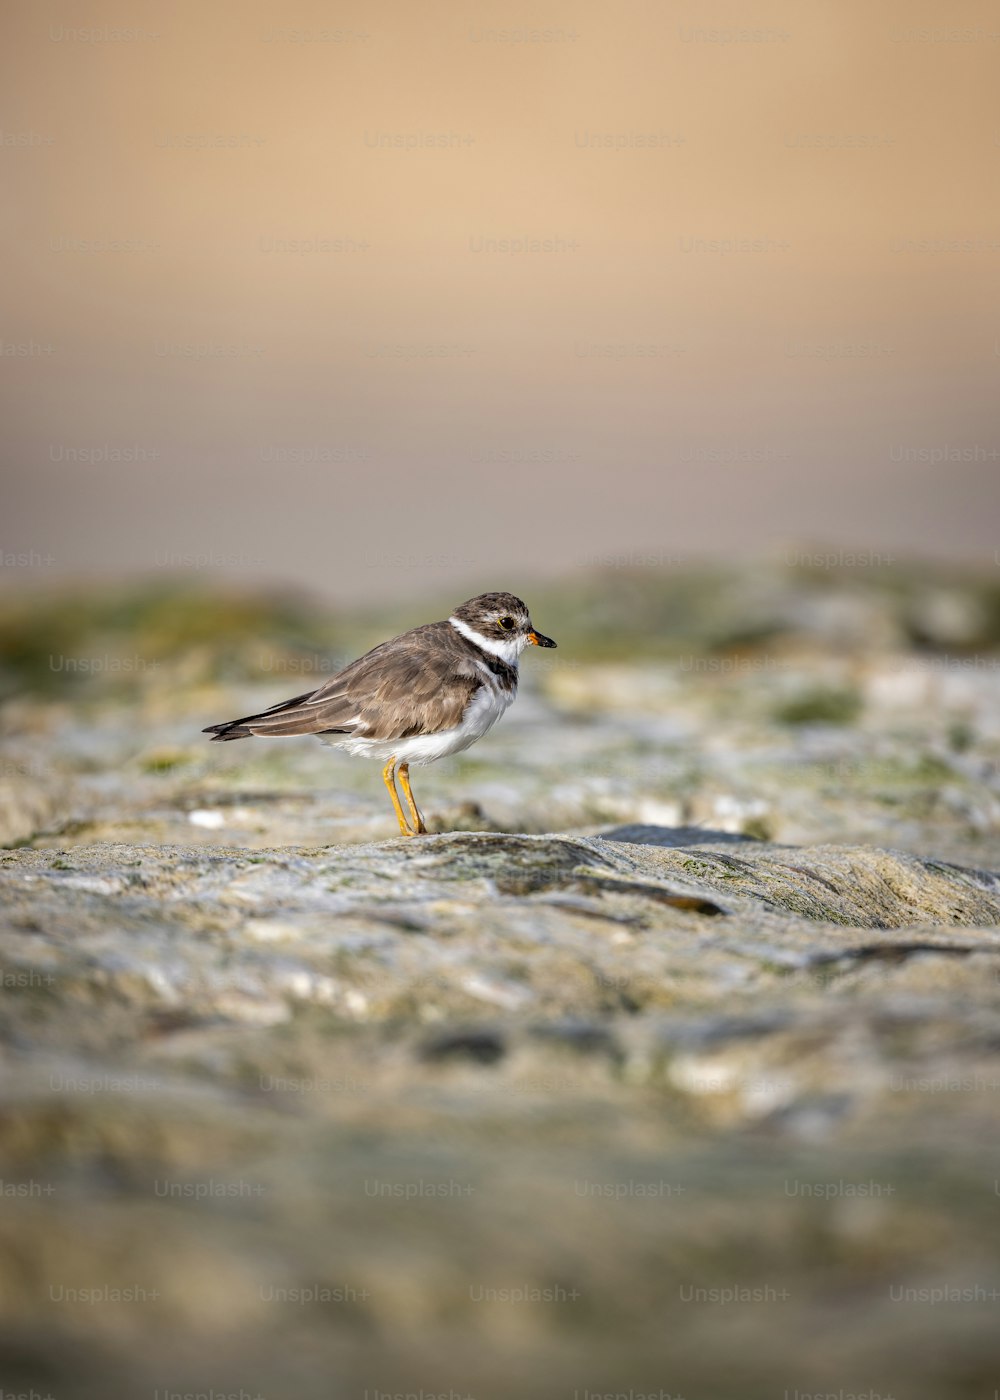 Un pequeño pájaro marrón y blanco parado sobre una roca